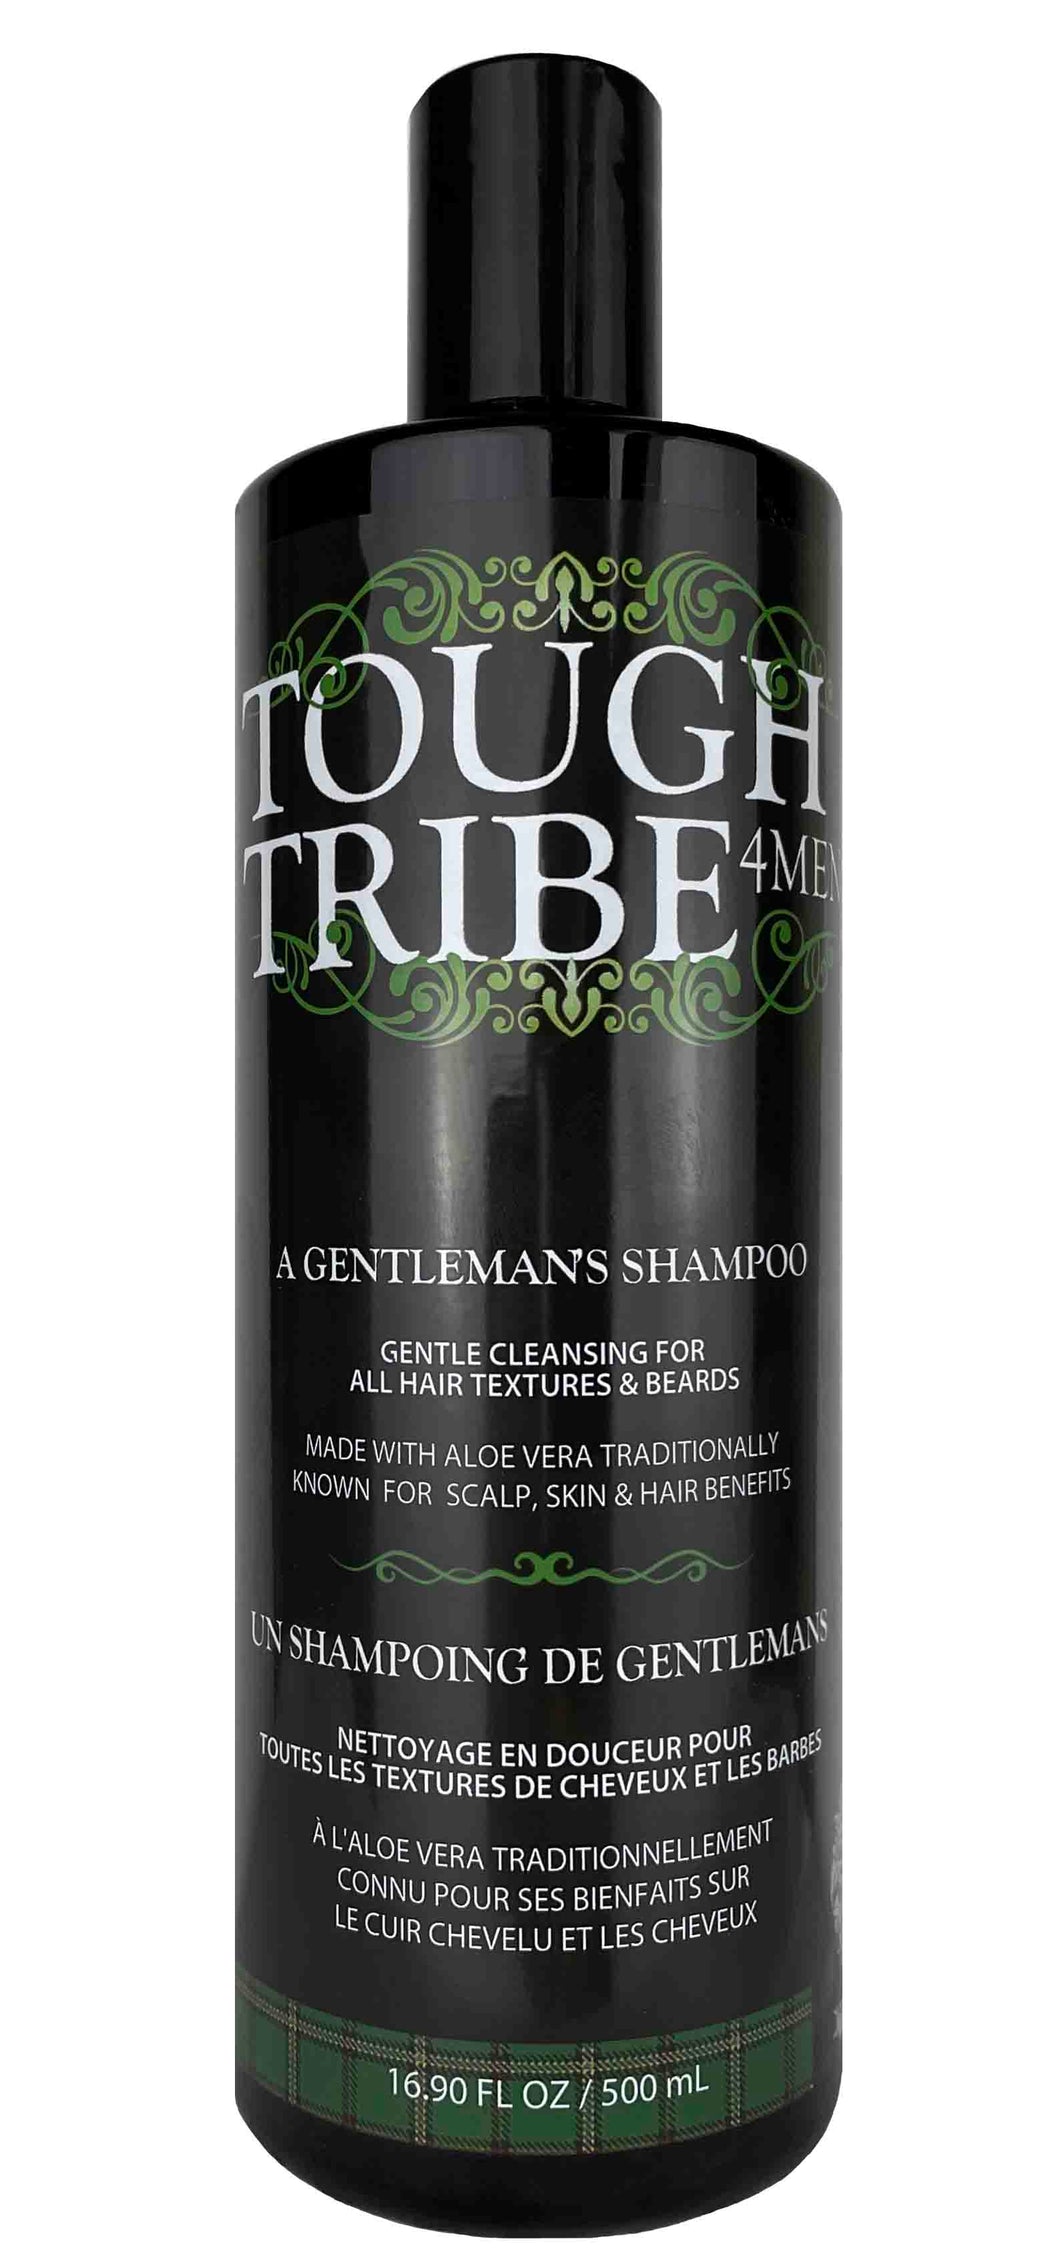 Tough Tribe 4Men  Gentleman's Shampoo 16oz